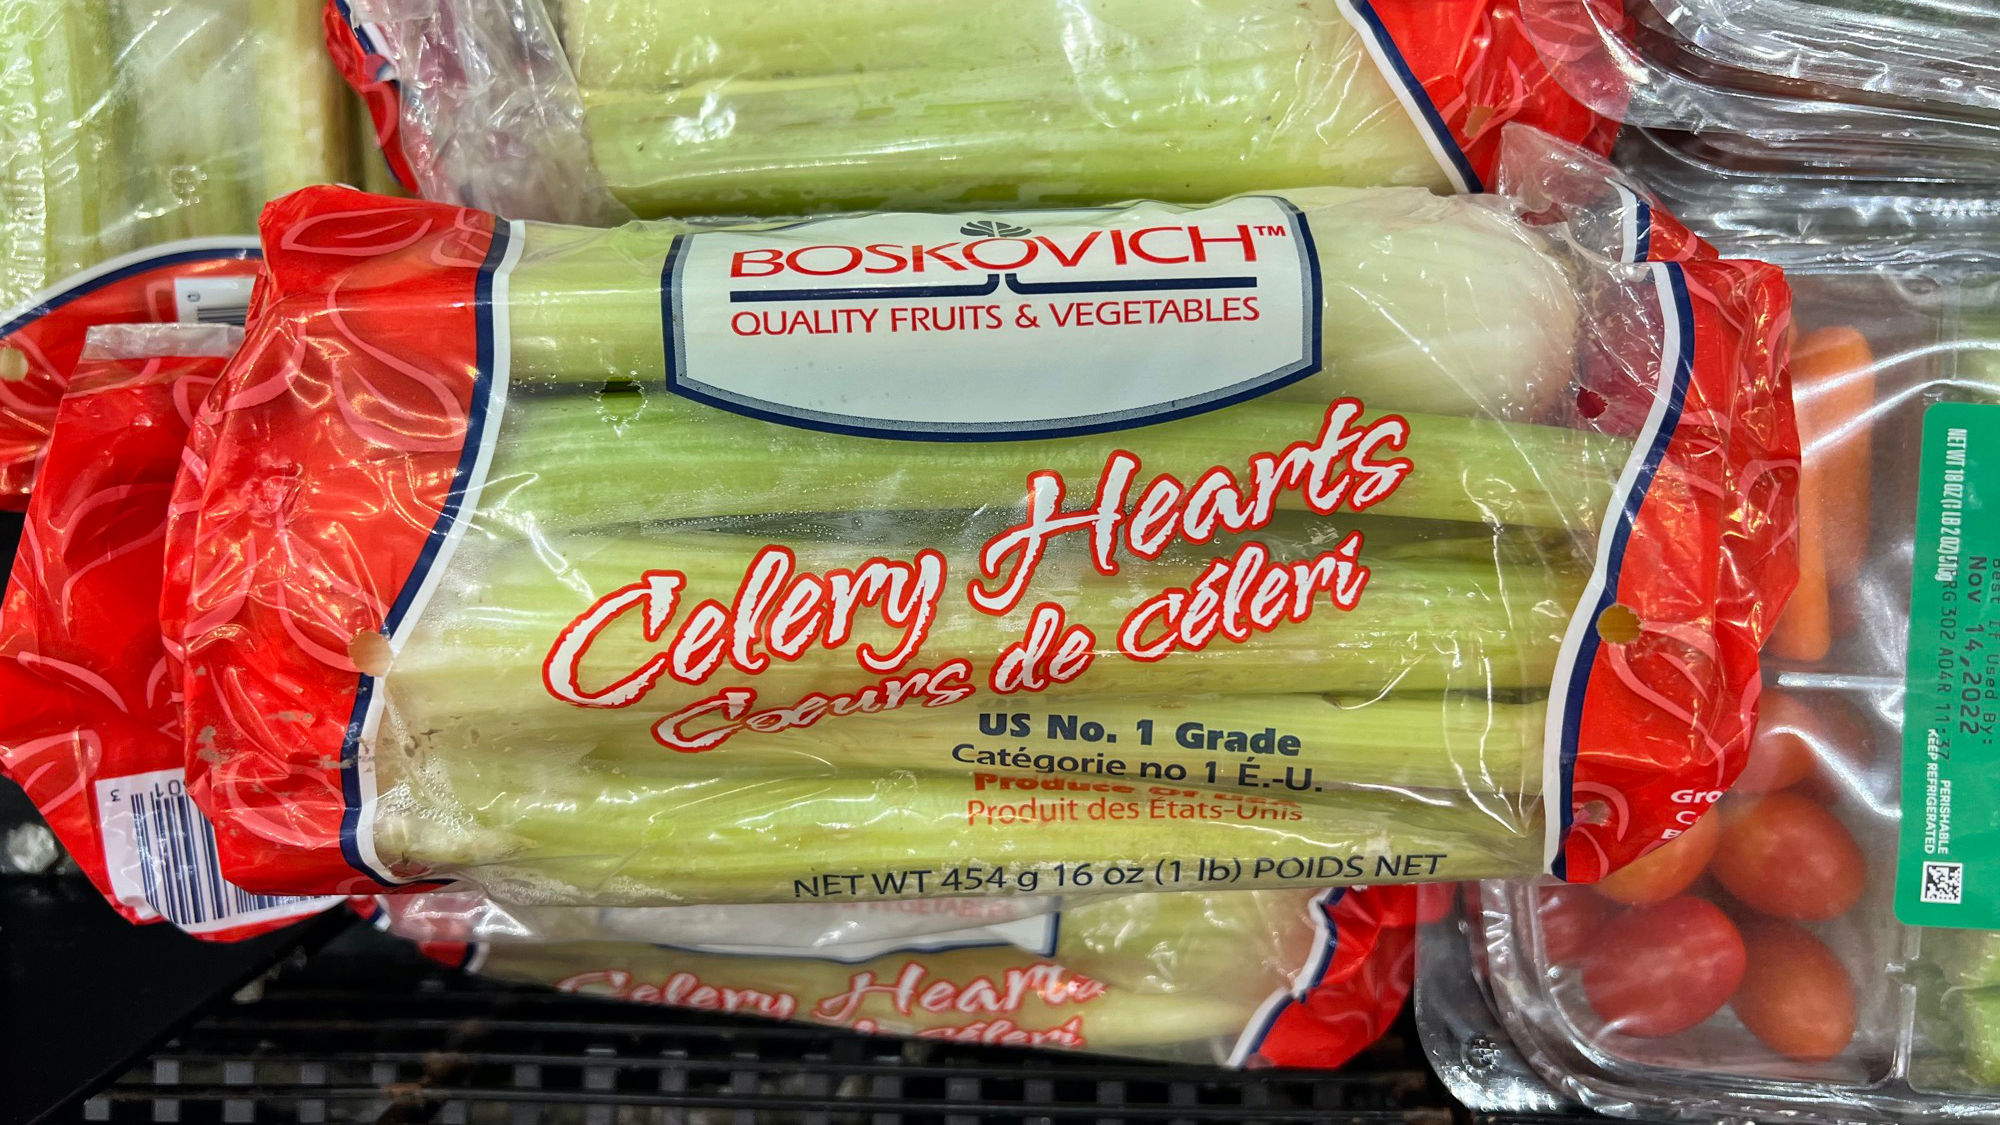 Celery Hearts Boskovich